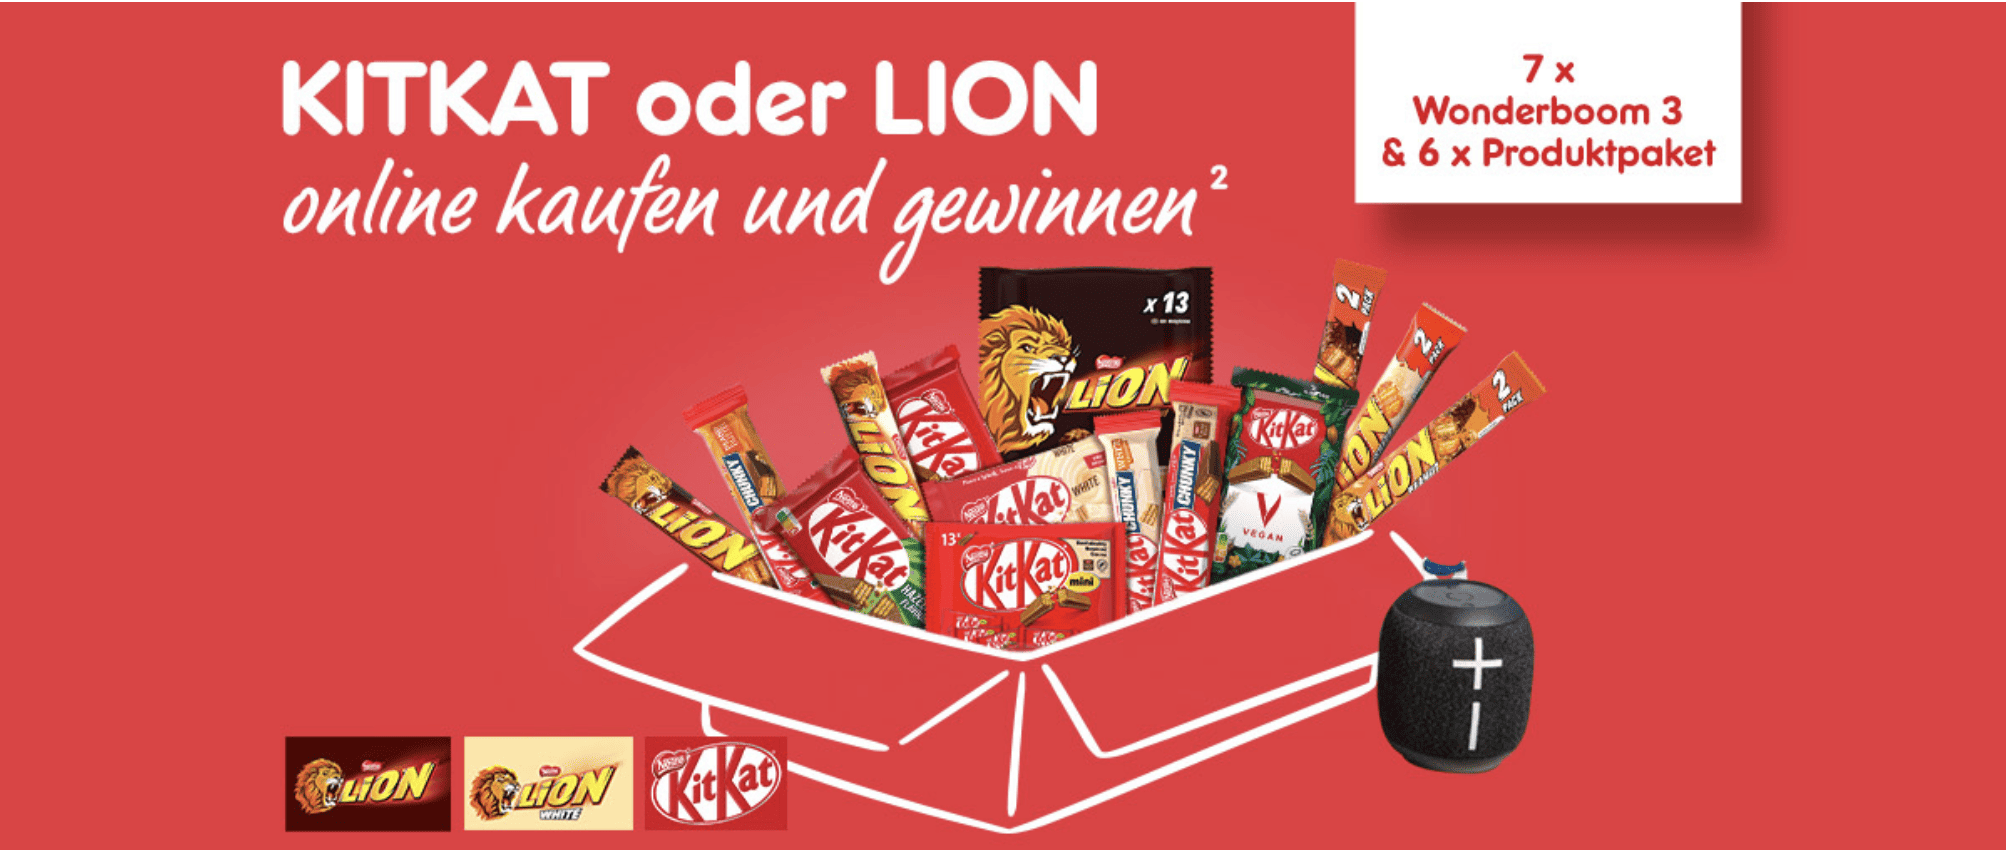 case_Kitkat oder Lion online bei Netto kaufen und gewinnen